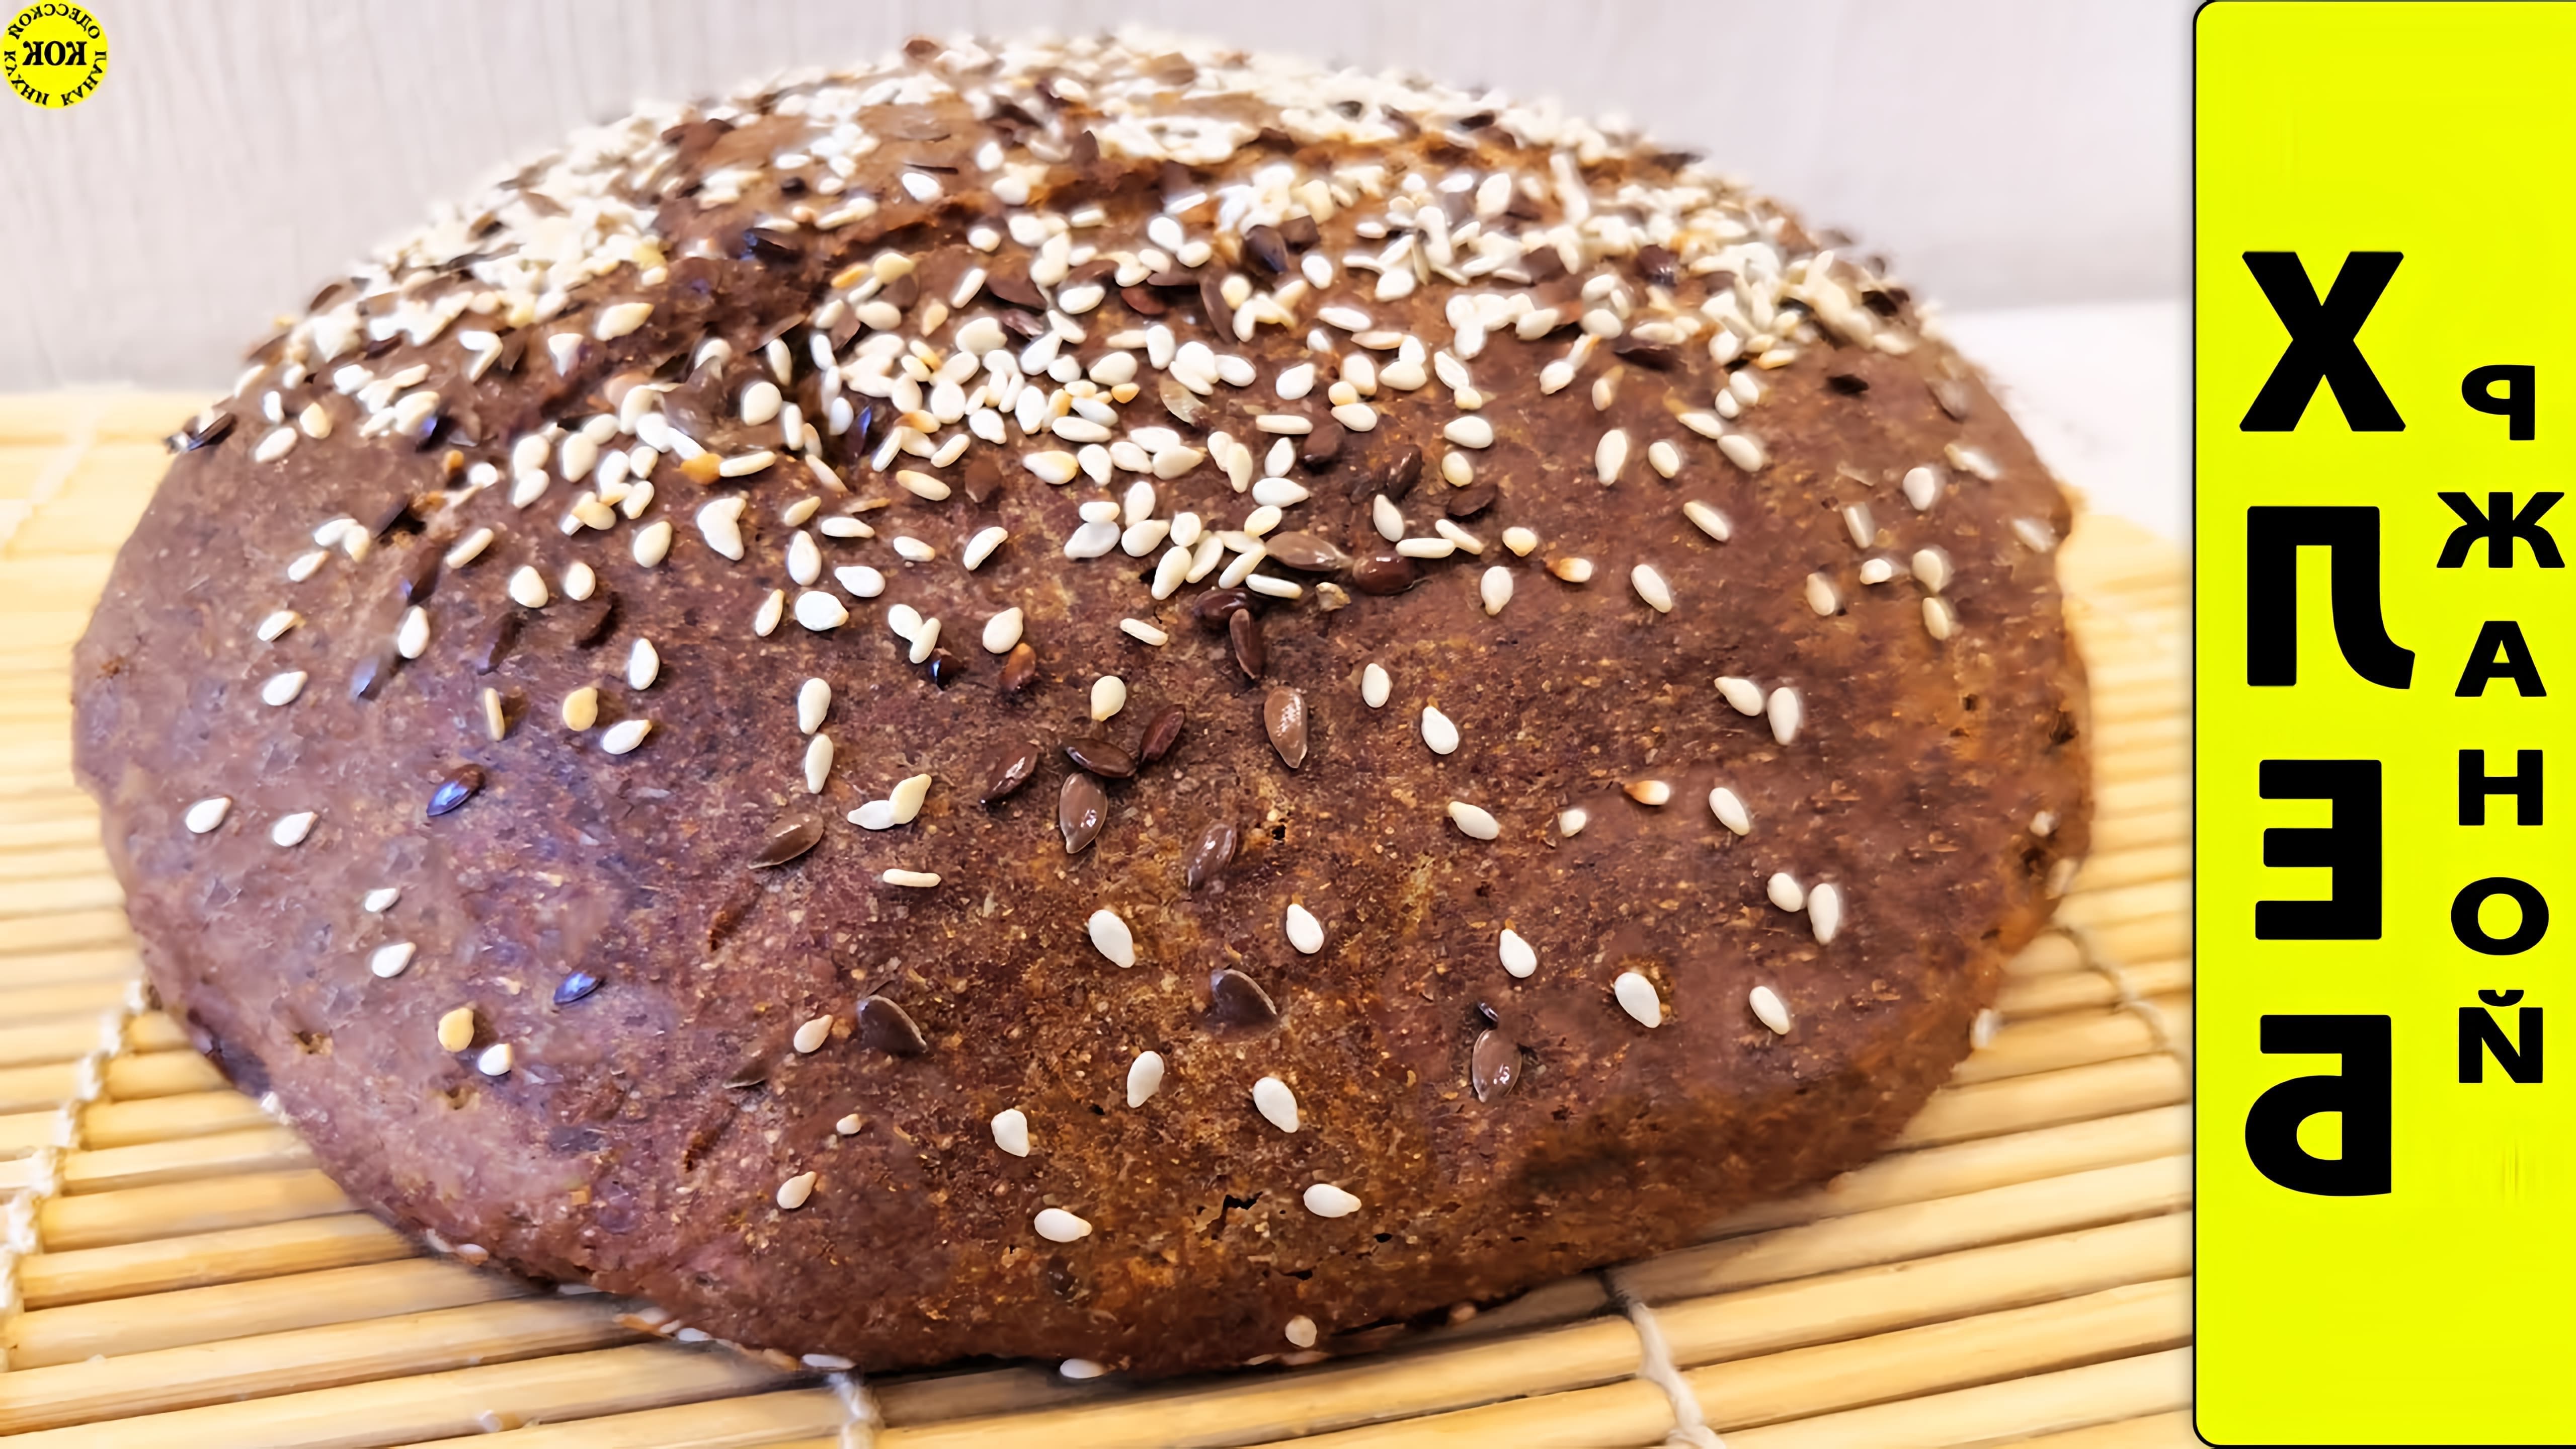 В этом видео демонстрируется рецепт приготовления ржаного хлеба без дрожжей